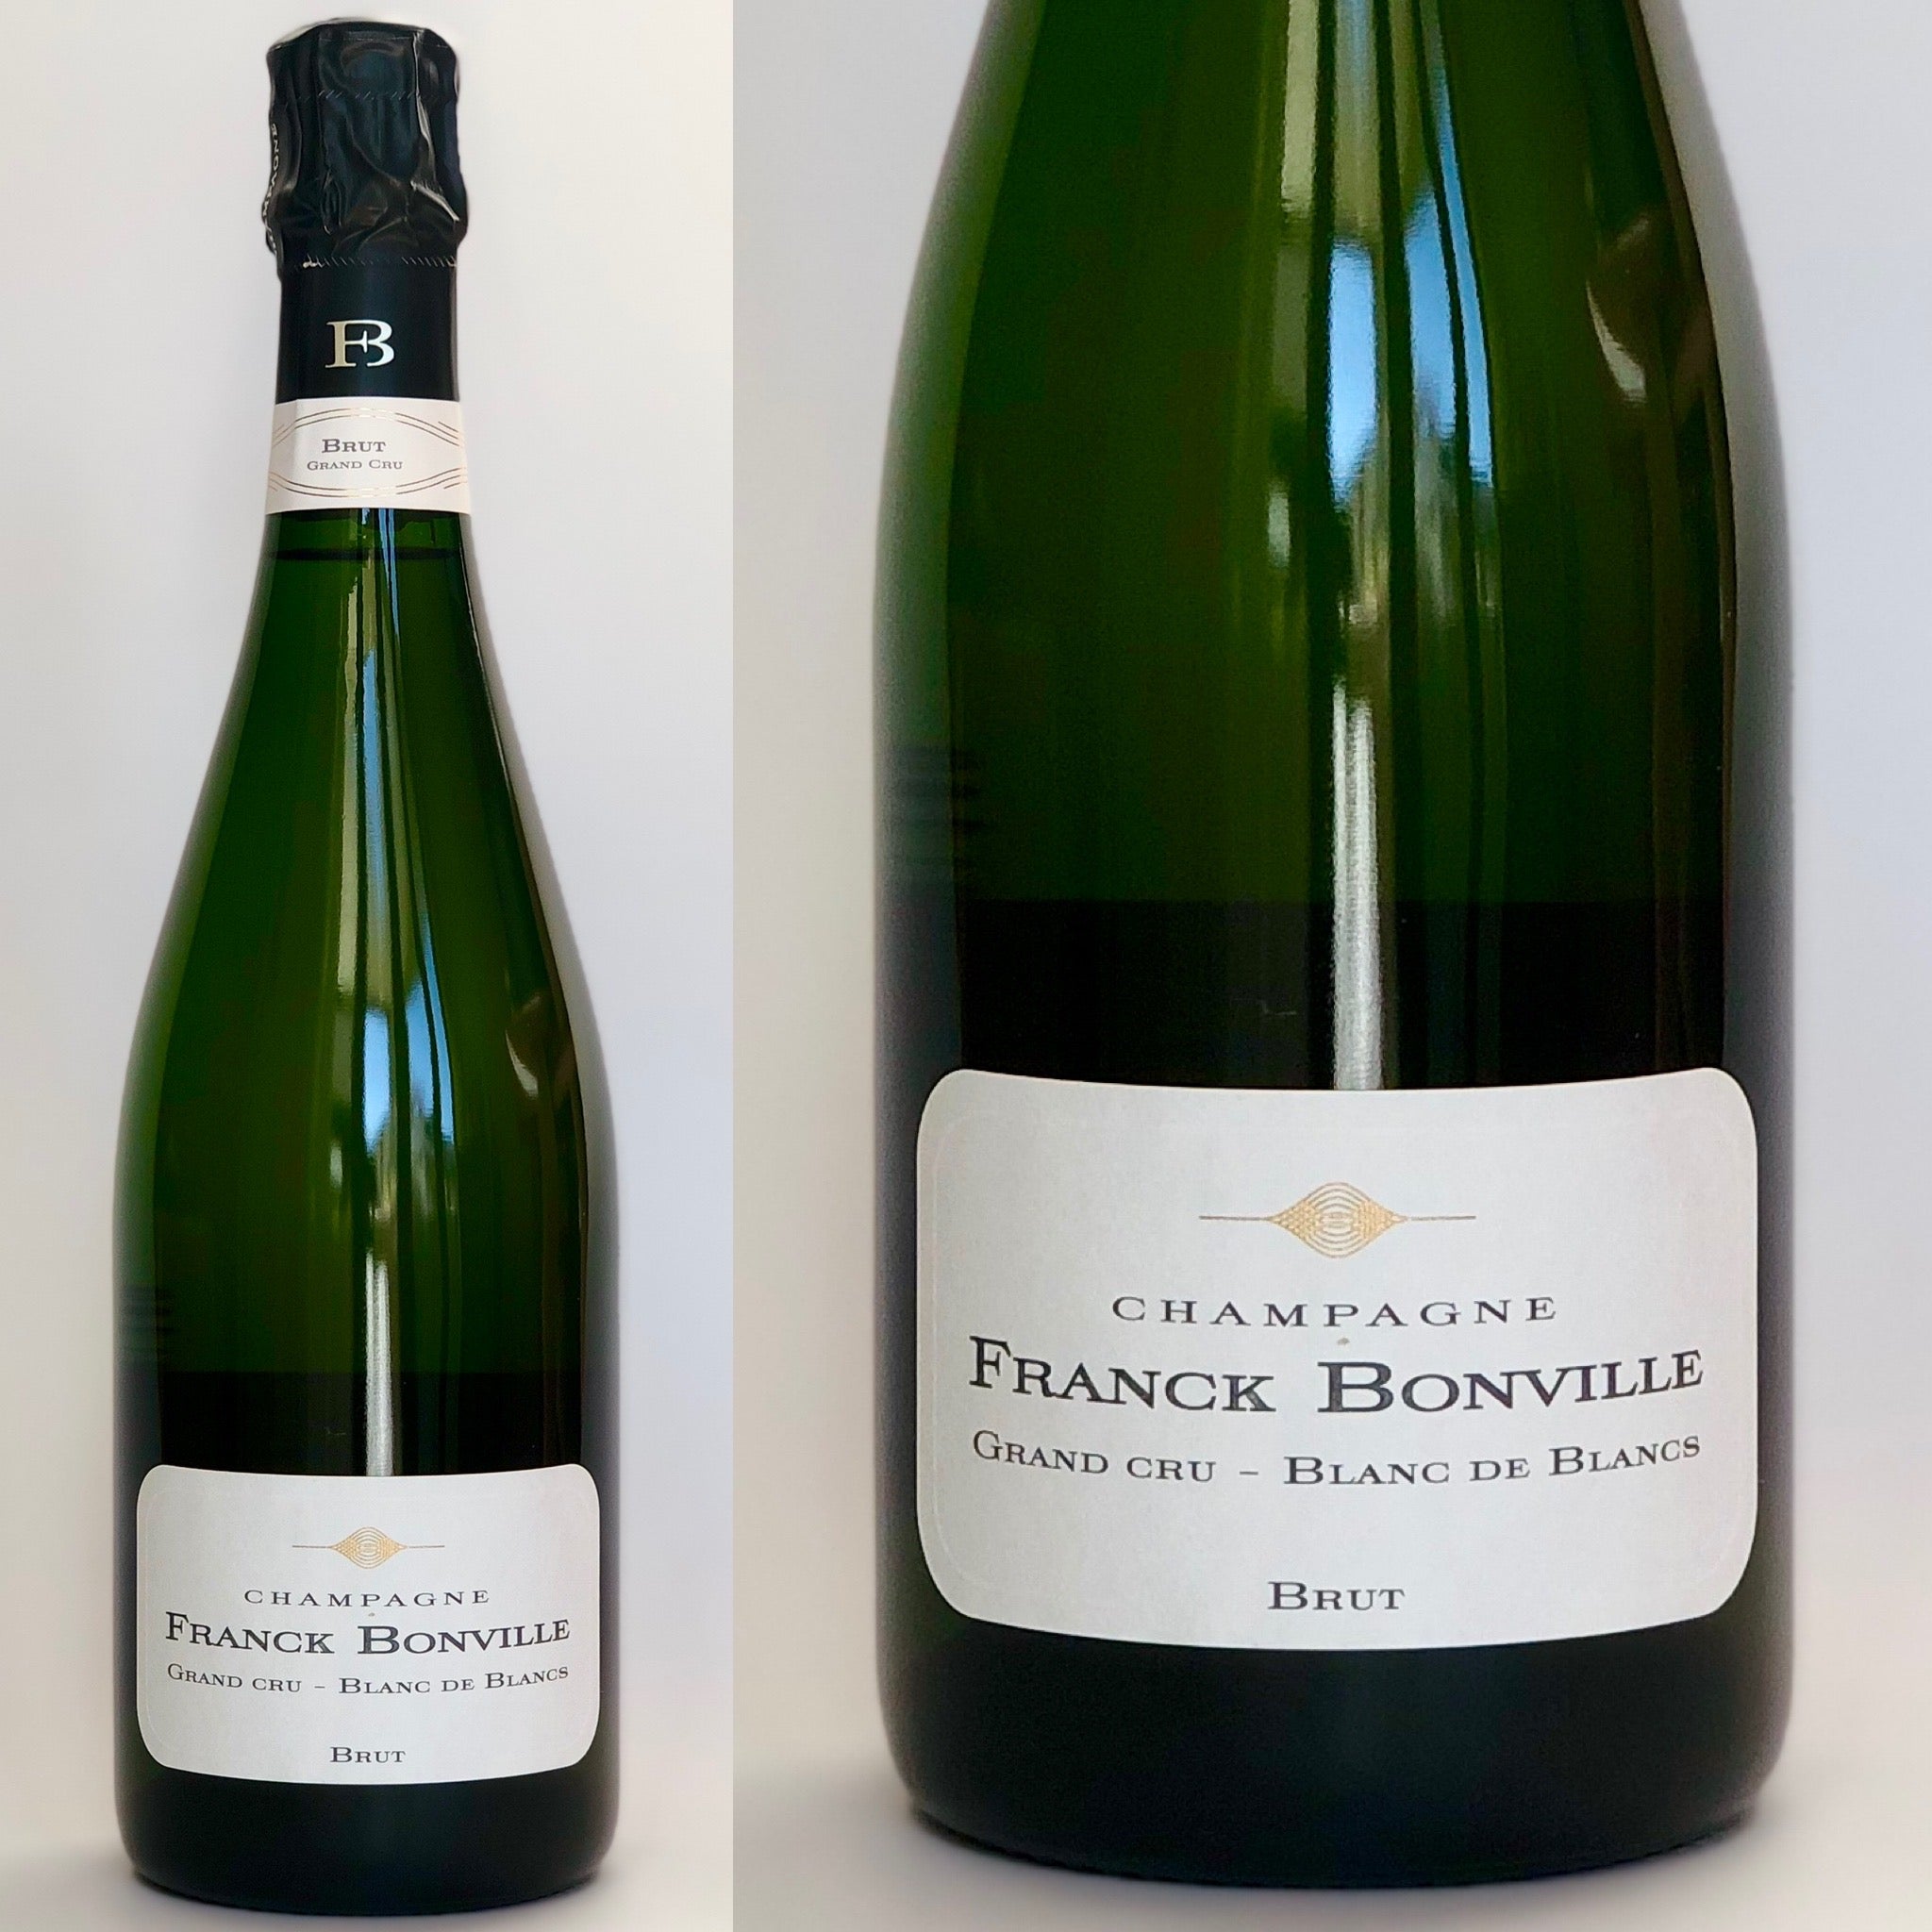 Franck Bonville Blanc de Blancs Champagne Grand Cru N.V. - フランク・ボンヴィル ブラン・ド・ブラン シャンパーニュ グラン・クリュ N.V.